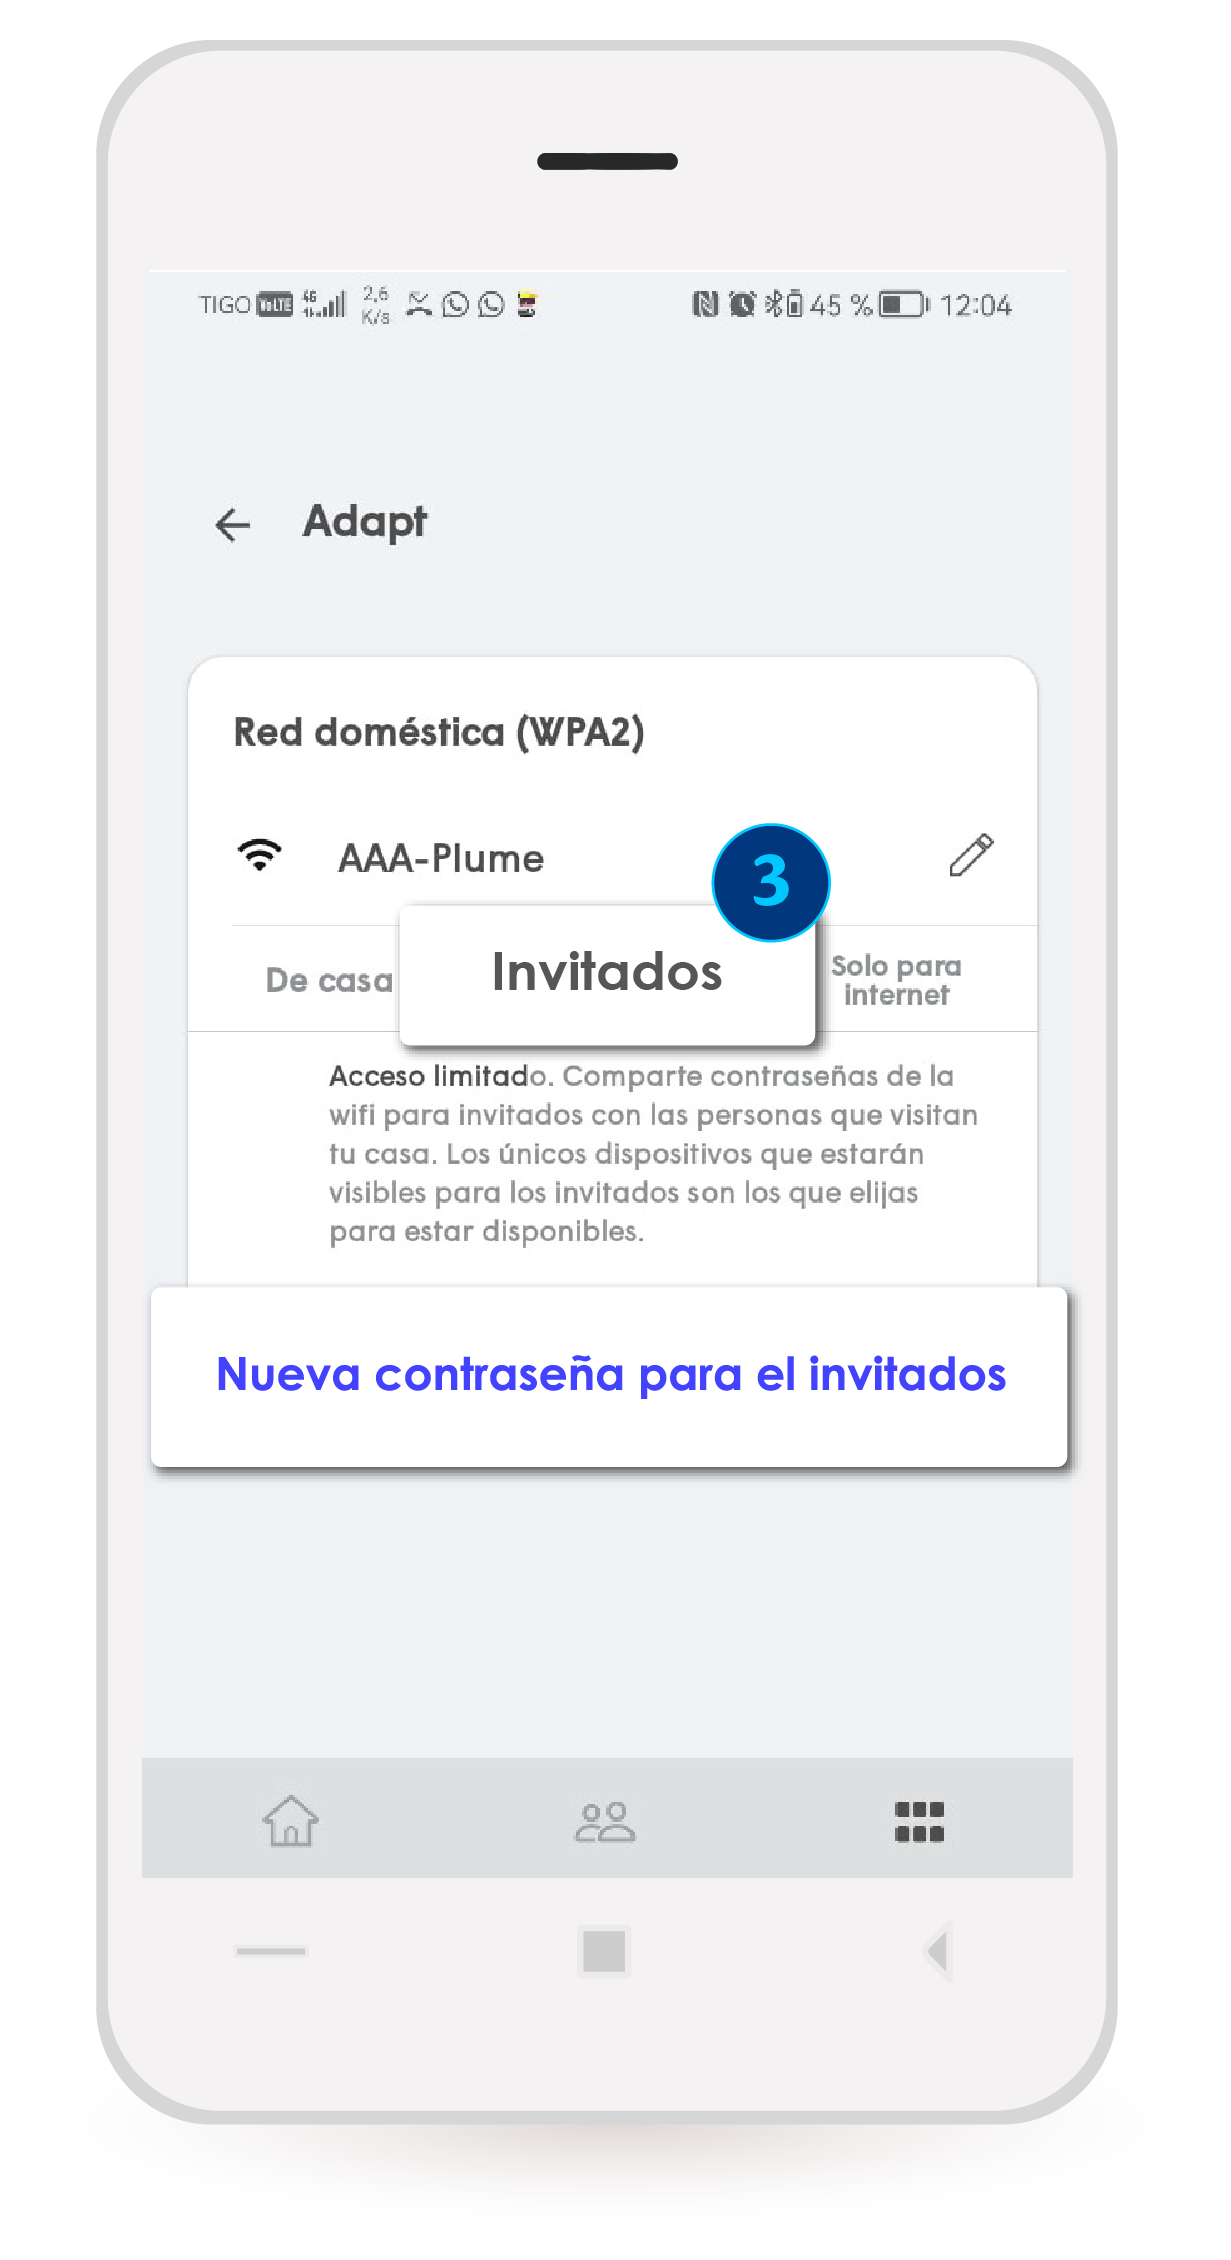 aw-nueva_contrasena_red_wifi_tigo_app